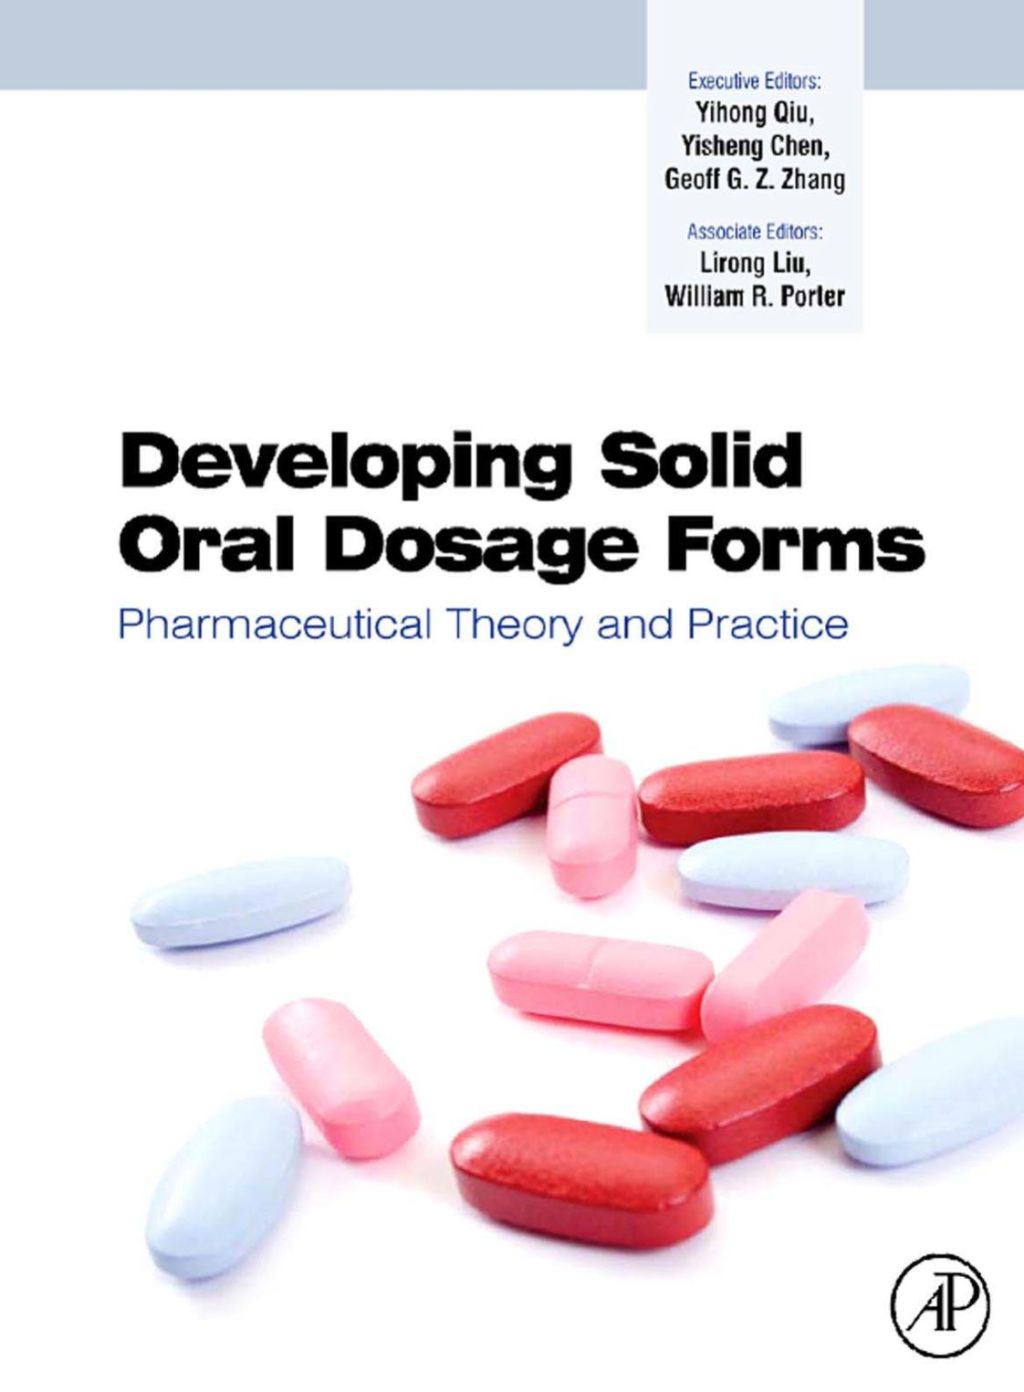 Developing Solid Oral Dosage Forms: Pharmaceutical Theory & Practice (eBook) - Qiu,  Yihong; Chen,  Yisheng; Zhang,  Geoff G.Z.; Liu,  Lirong; Yu,  Lawrence; Rao,  Venkatramana; Porter,